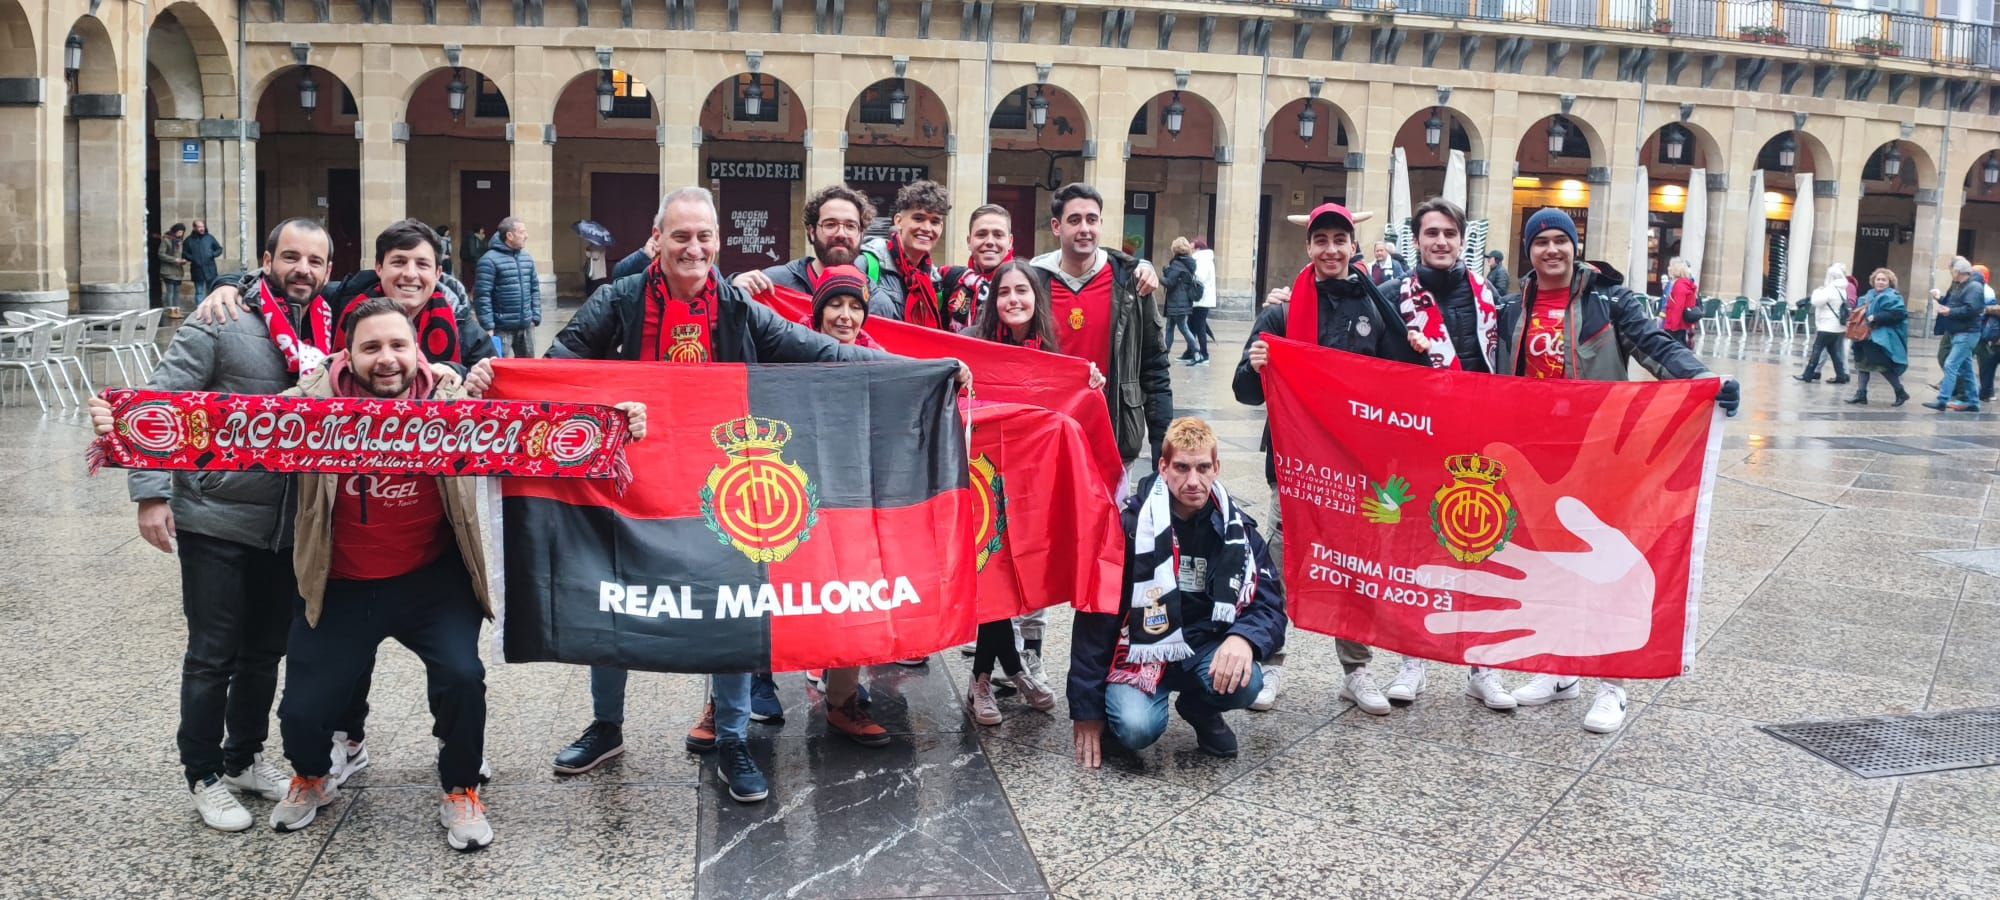 Los aficionados del Real Mallorca comienzan a invadir San Sebastián